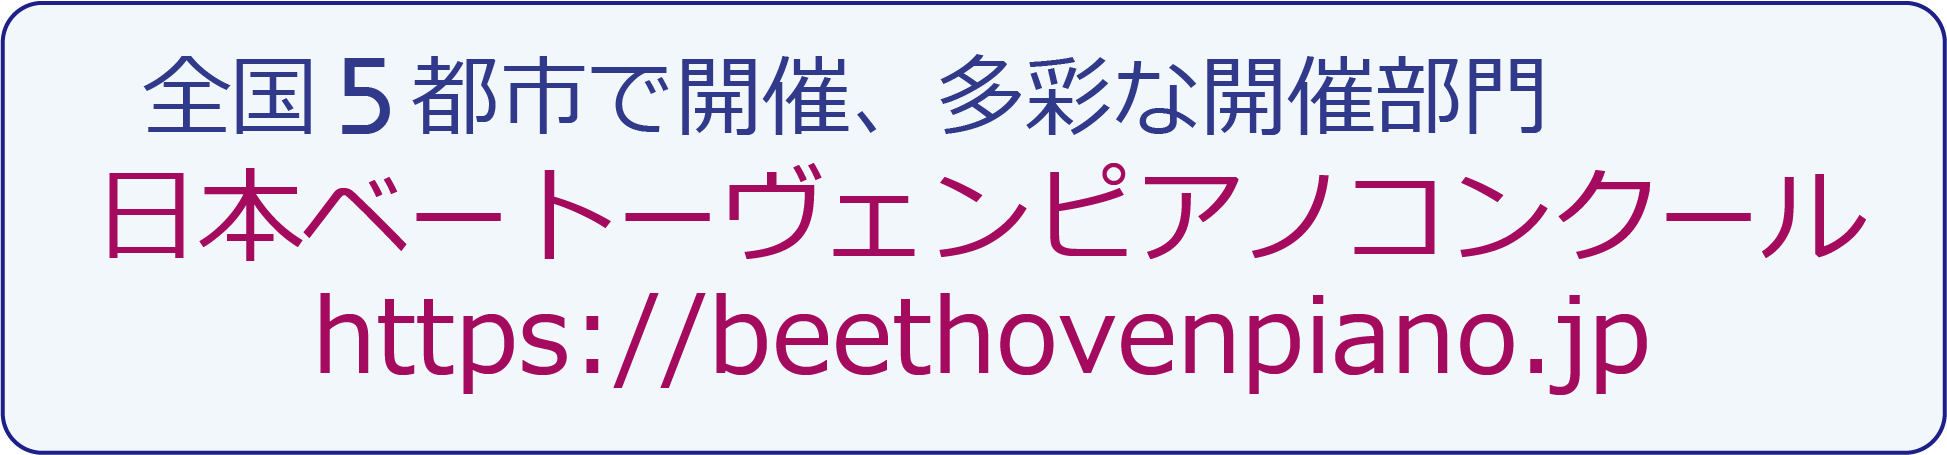 日本ベートーヴェンピアノコンクール